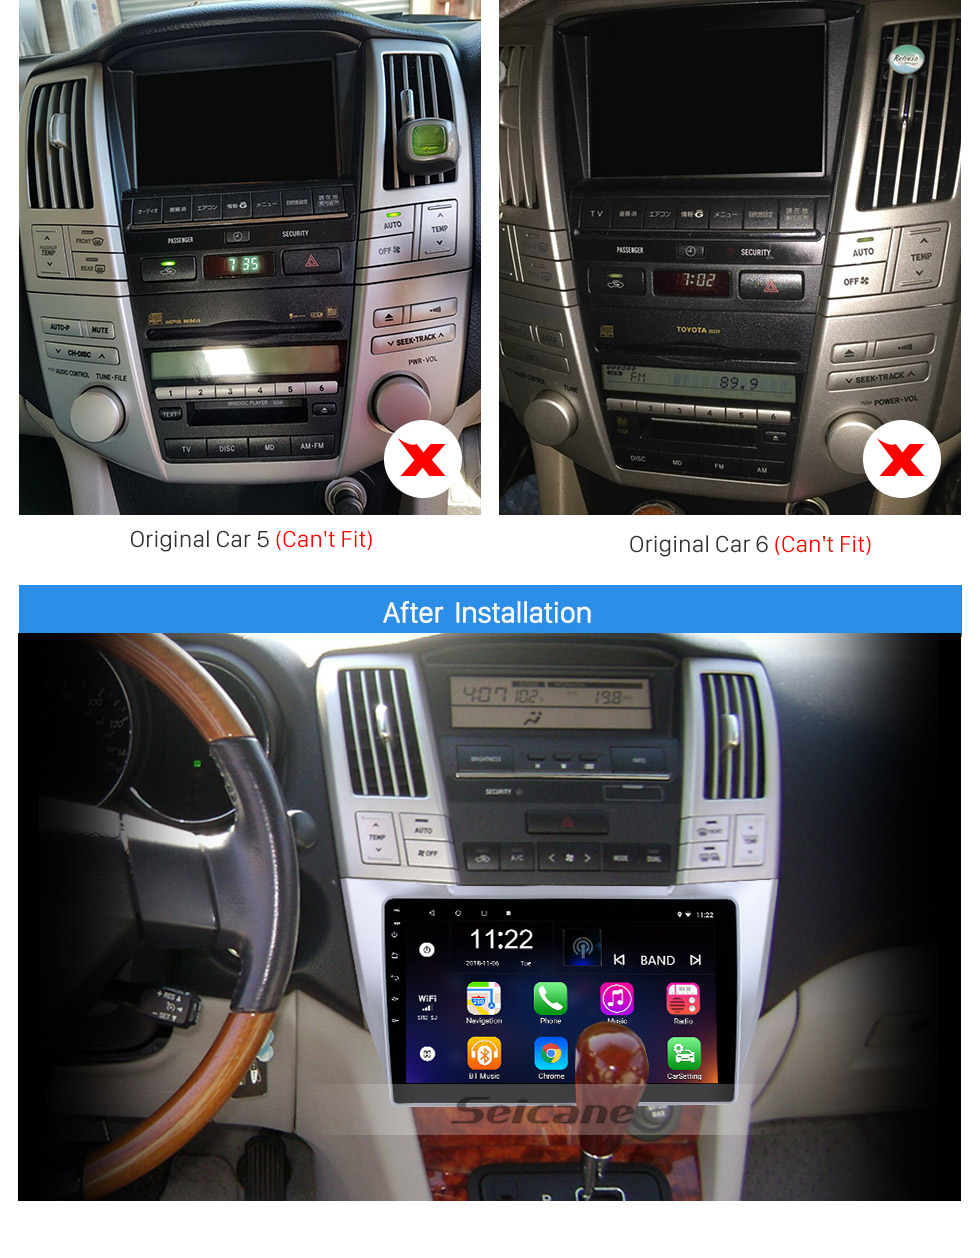 Seicane Leitor de dvd Android 10.0 indash carro para 2004-2010 Lexus RX 300 330 350 com Carplay Bluetooth IPS touch screen Suporte OBD2 DVR câmera retrovisor 3G WIFI Controle de volante